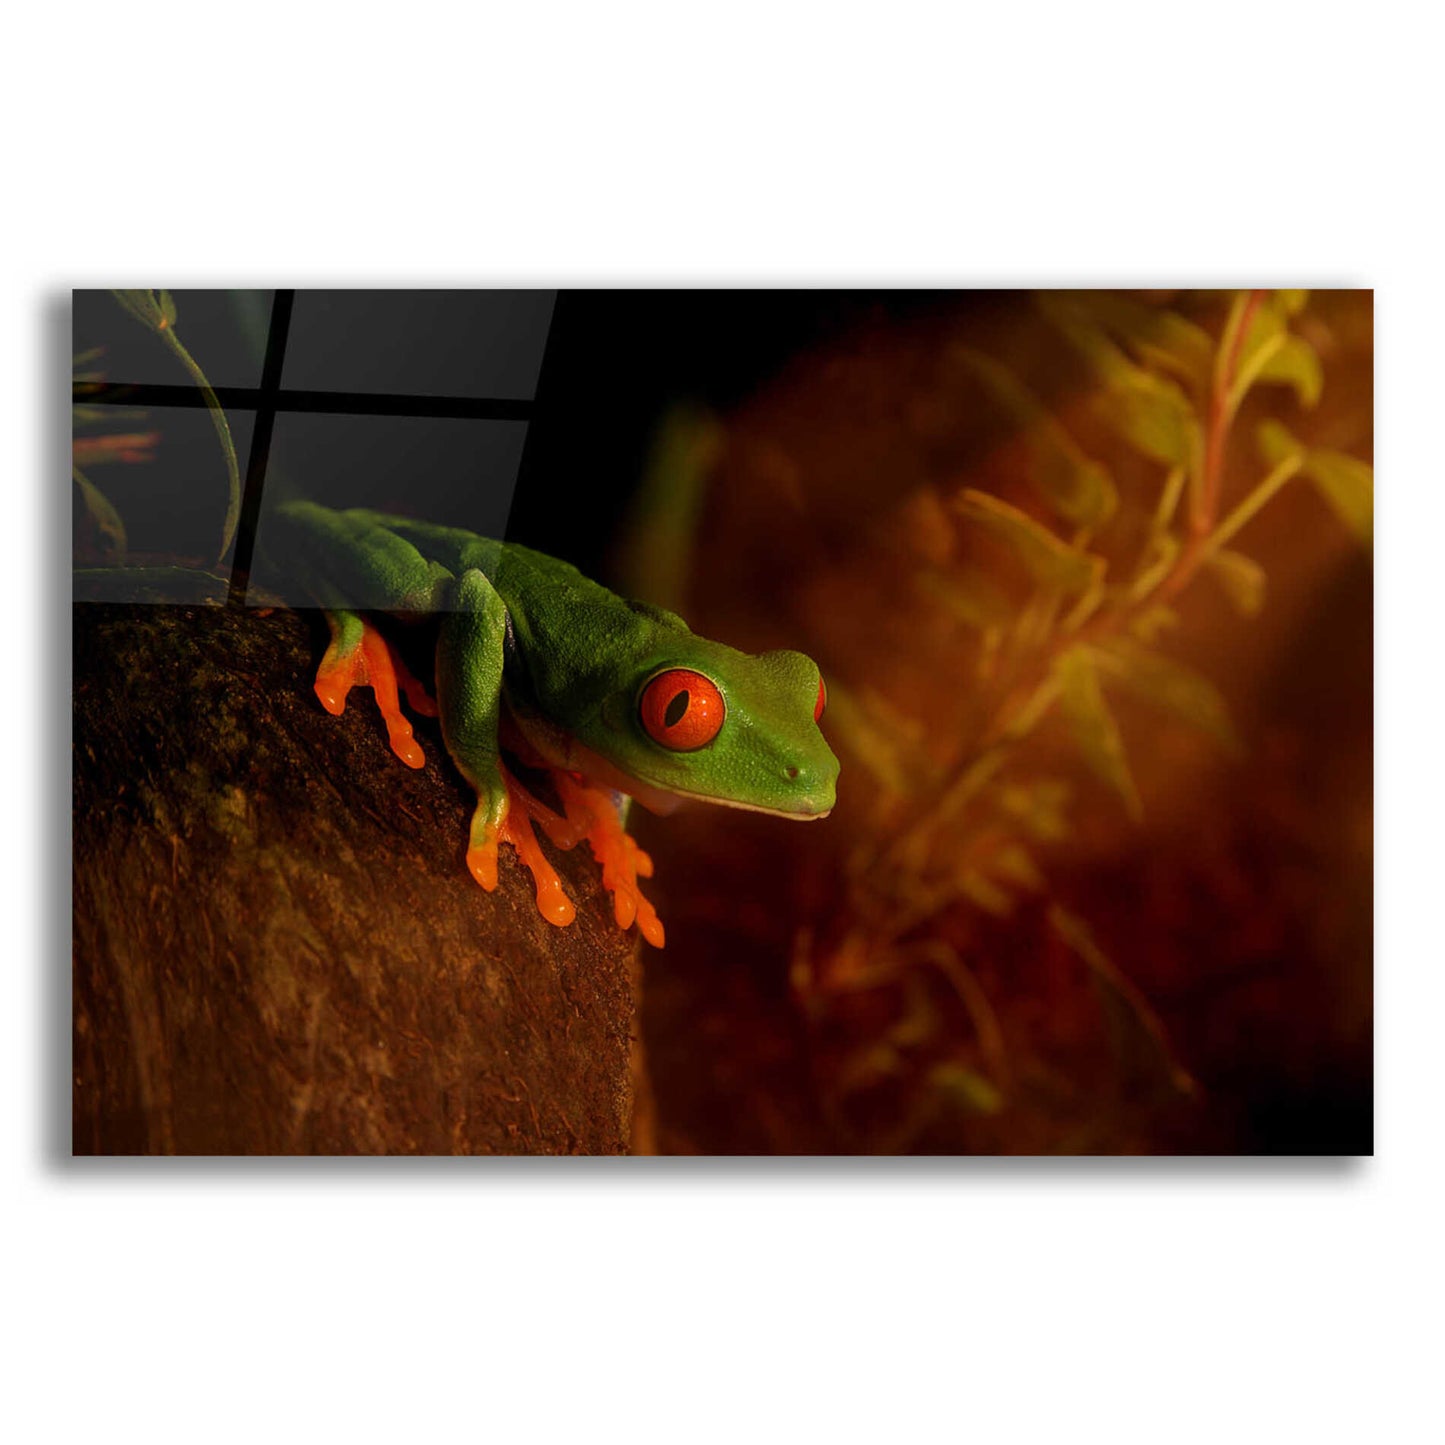 Epic Art 'Froggy' by Epic Portfolio Acrylic Glass Wall Art,24x16